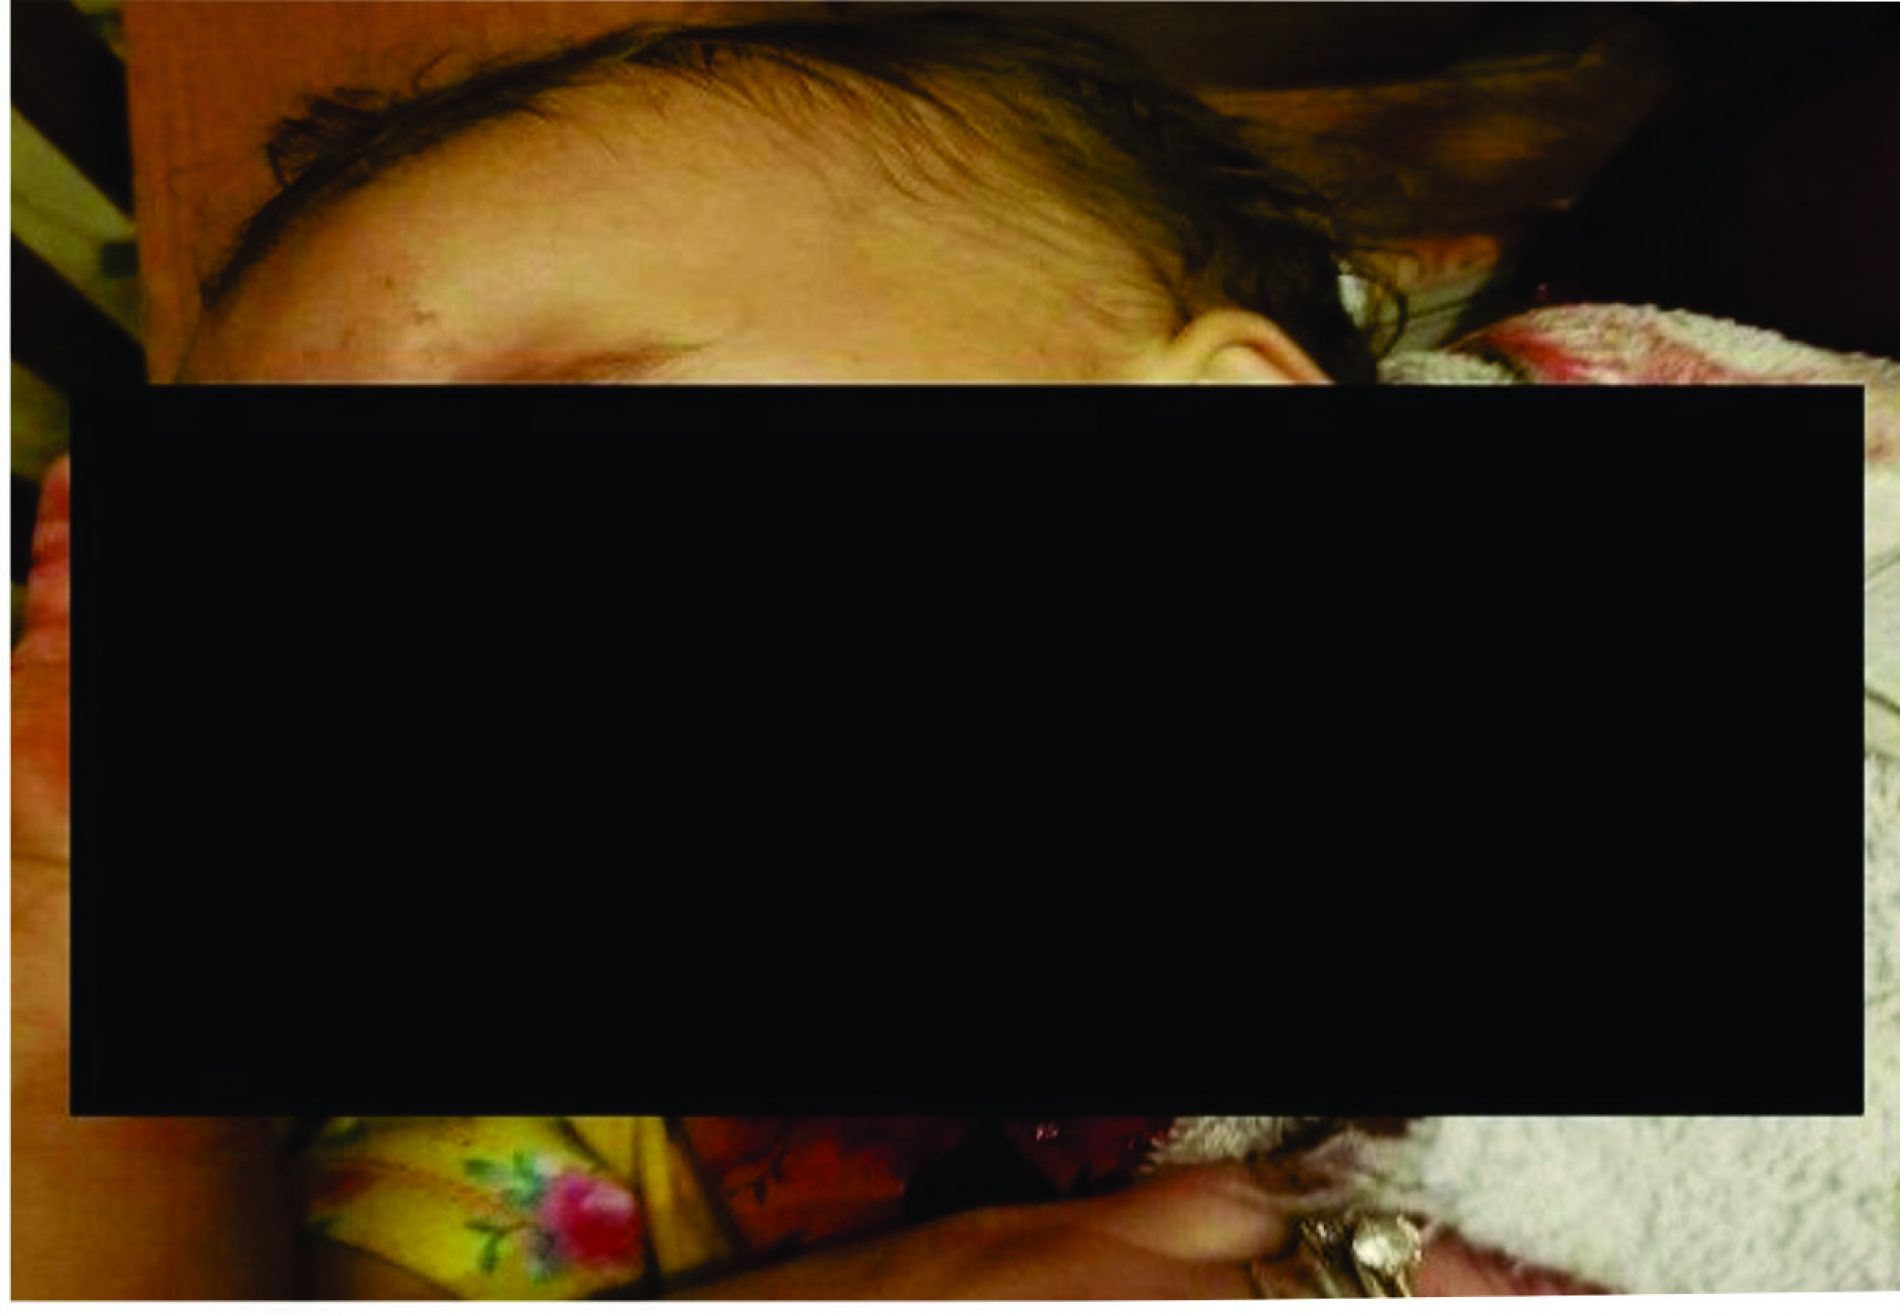 Bebê com rosto cortado vai ganhar R$ 1,00 por compartilhamento de foto no WhatsApp?